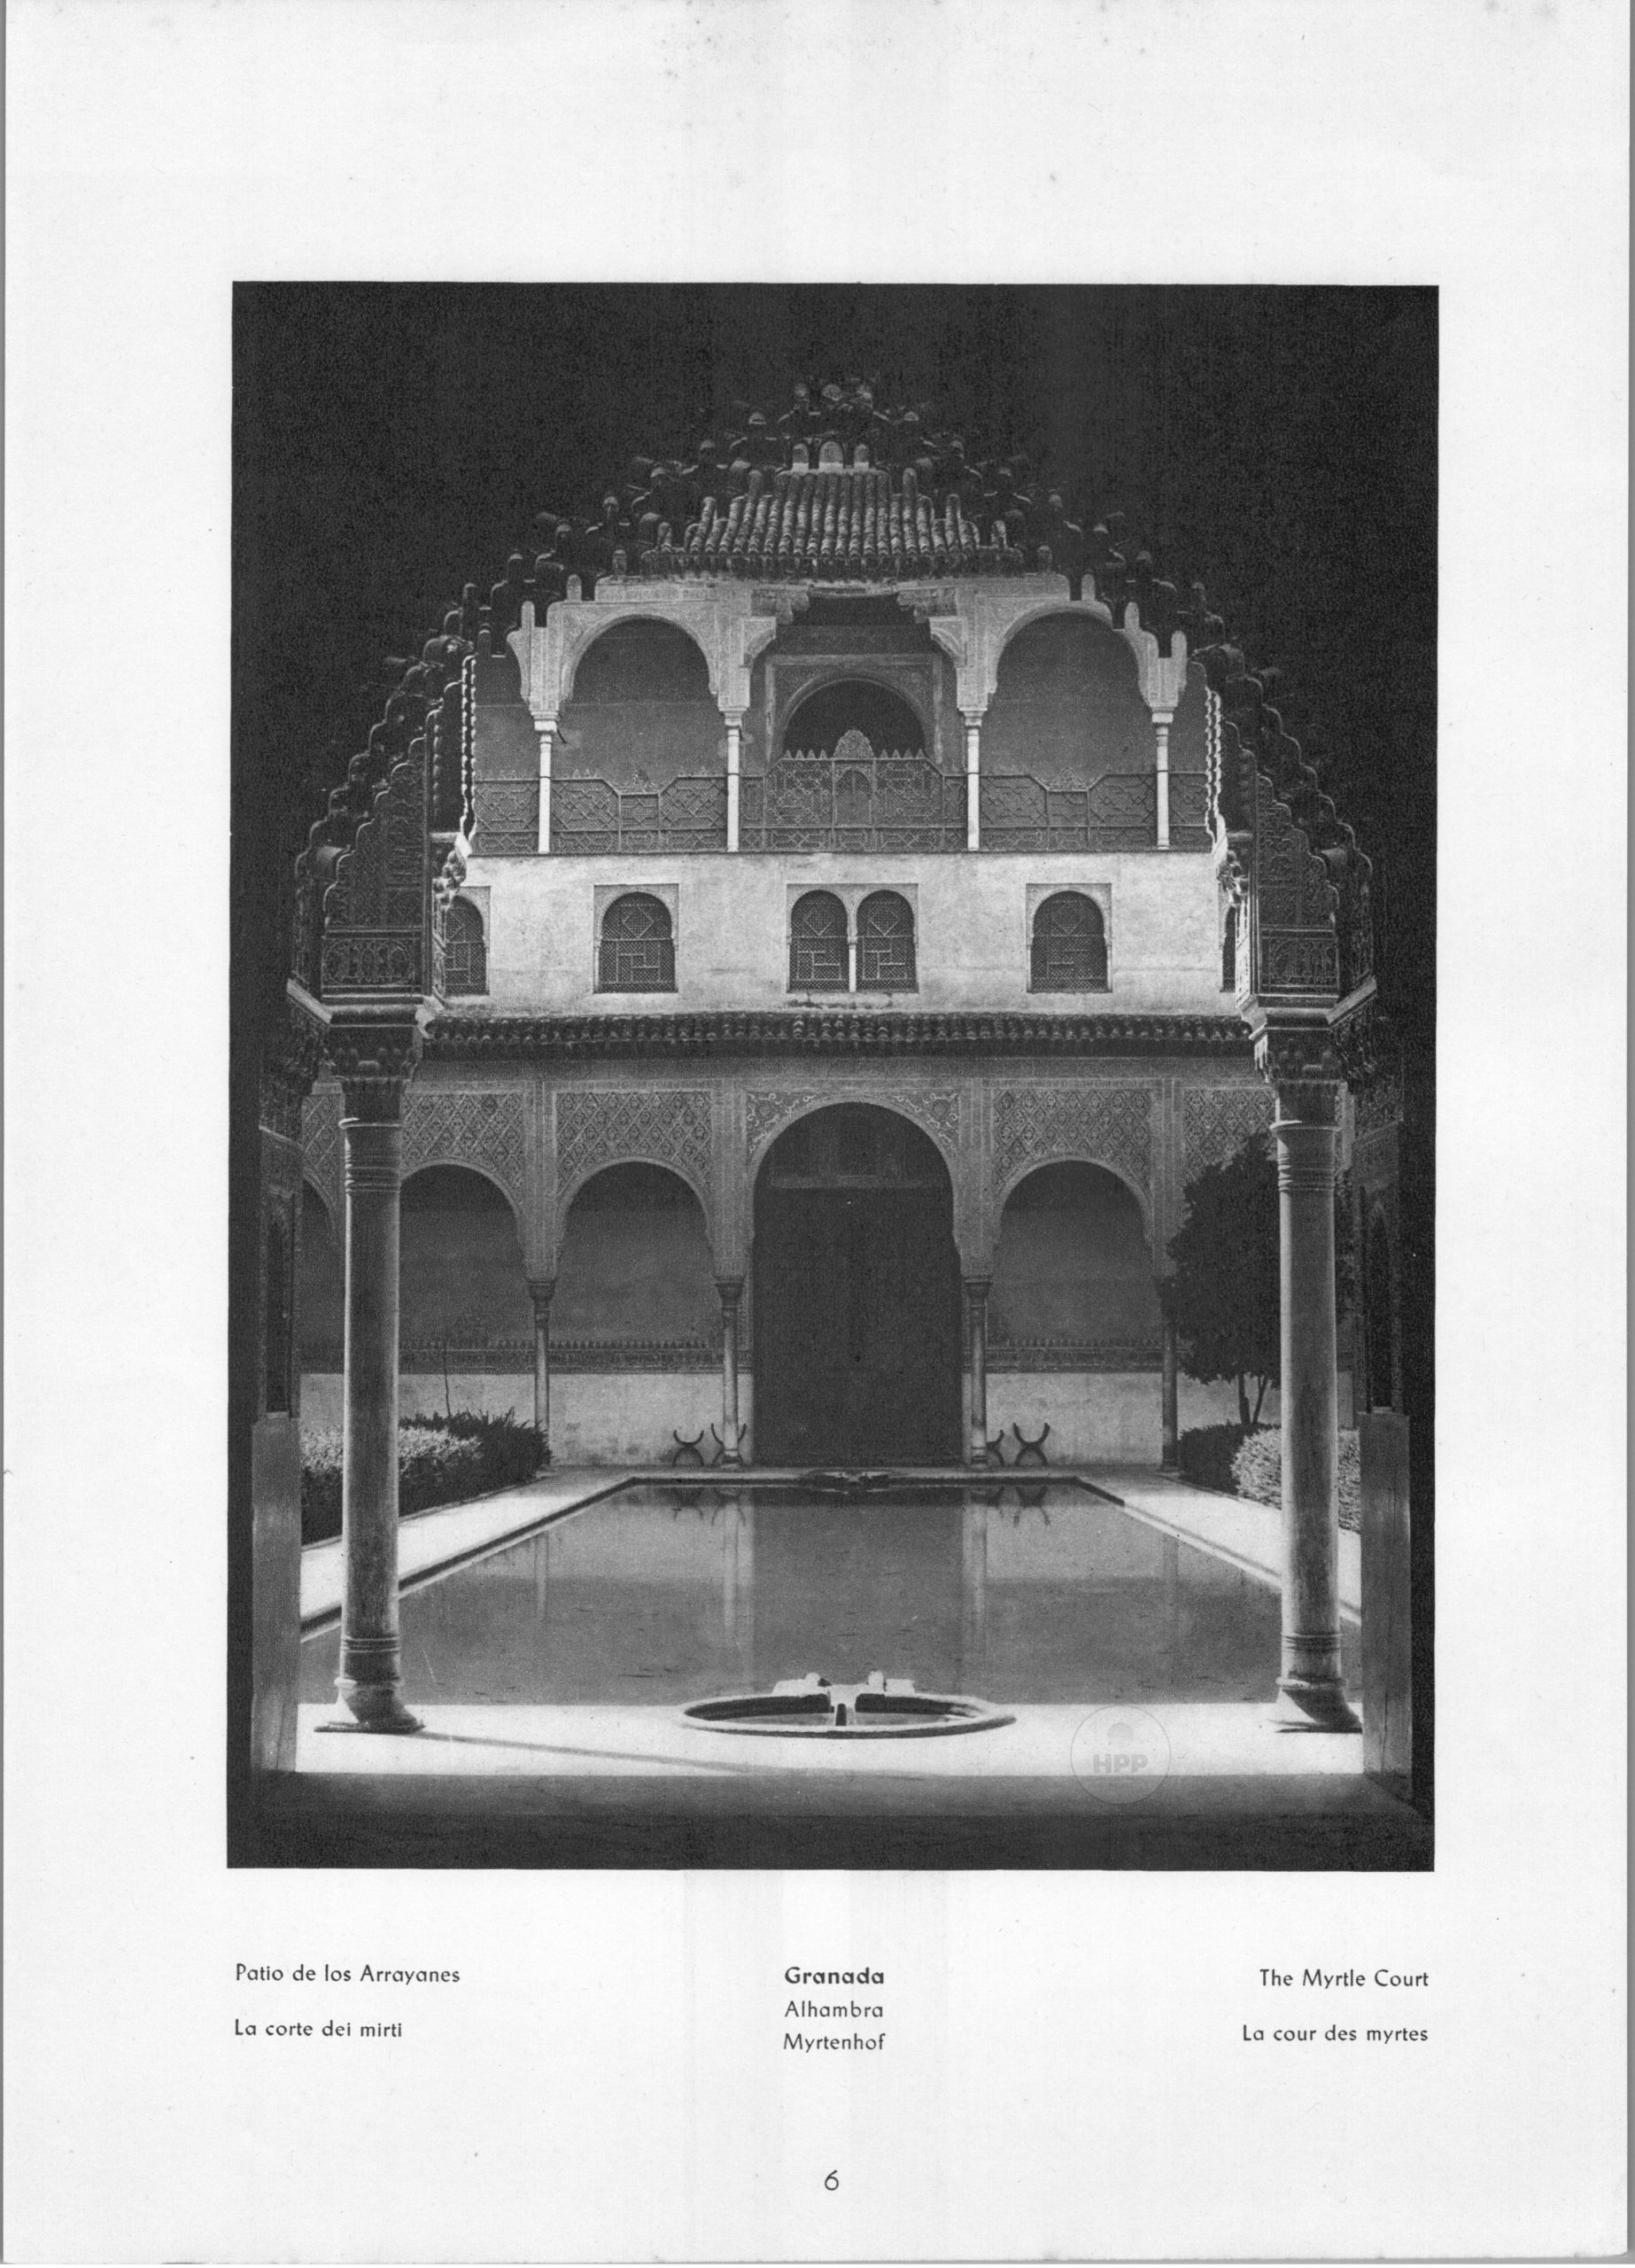 Granada Alhambra - The Myrtle Court